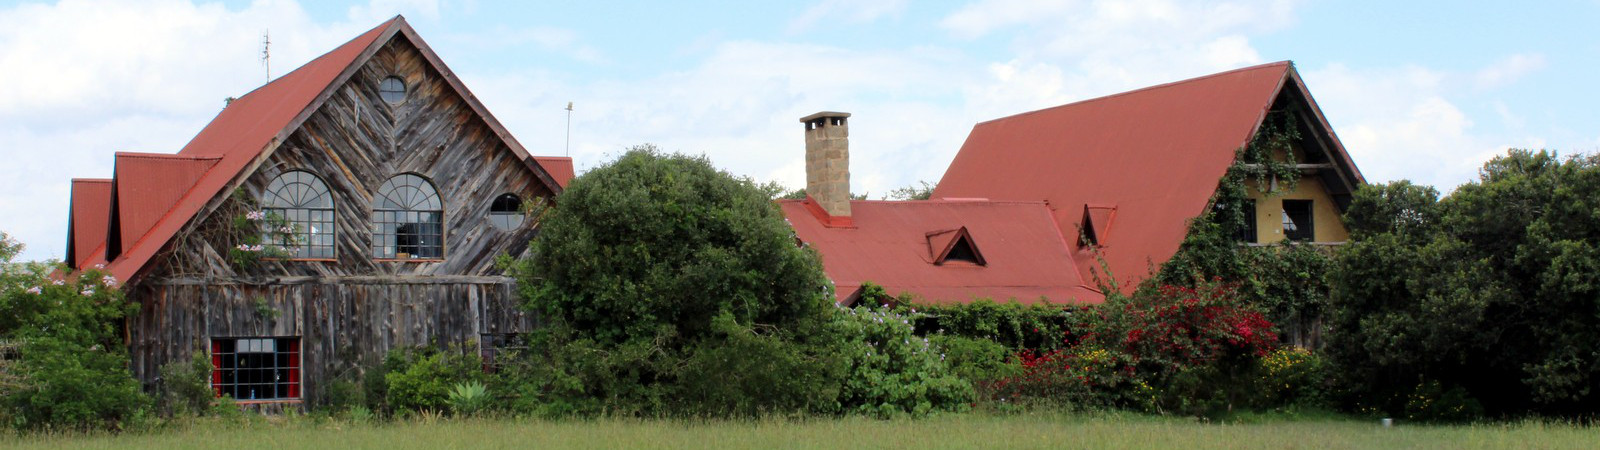 Sandai Farm Kenya – the main house